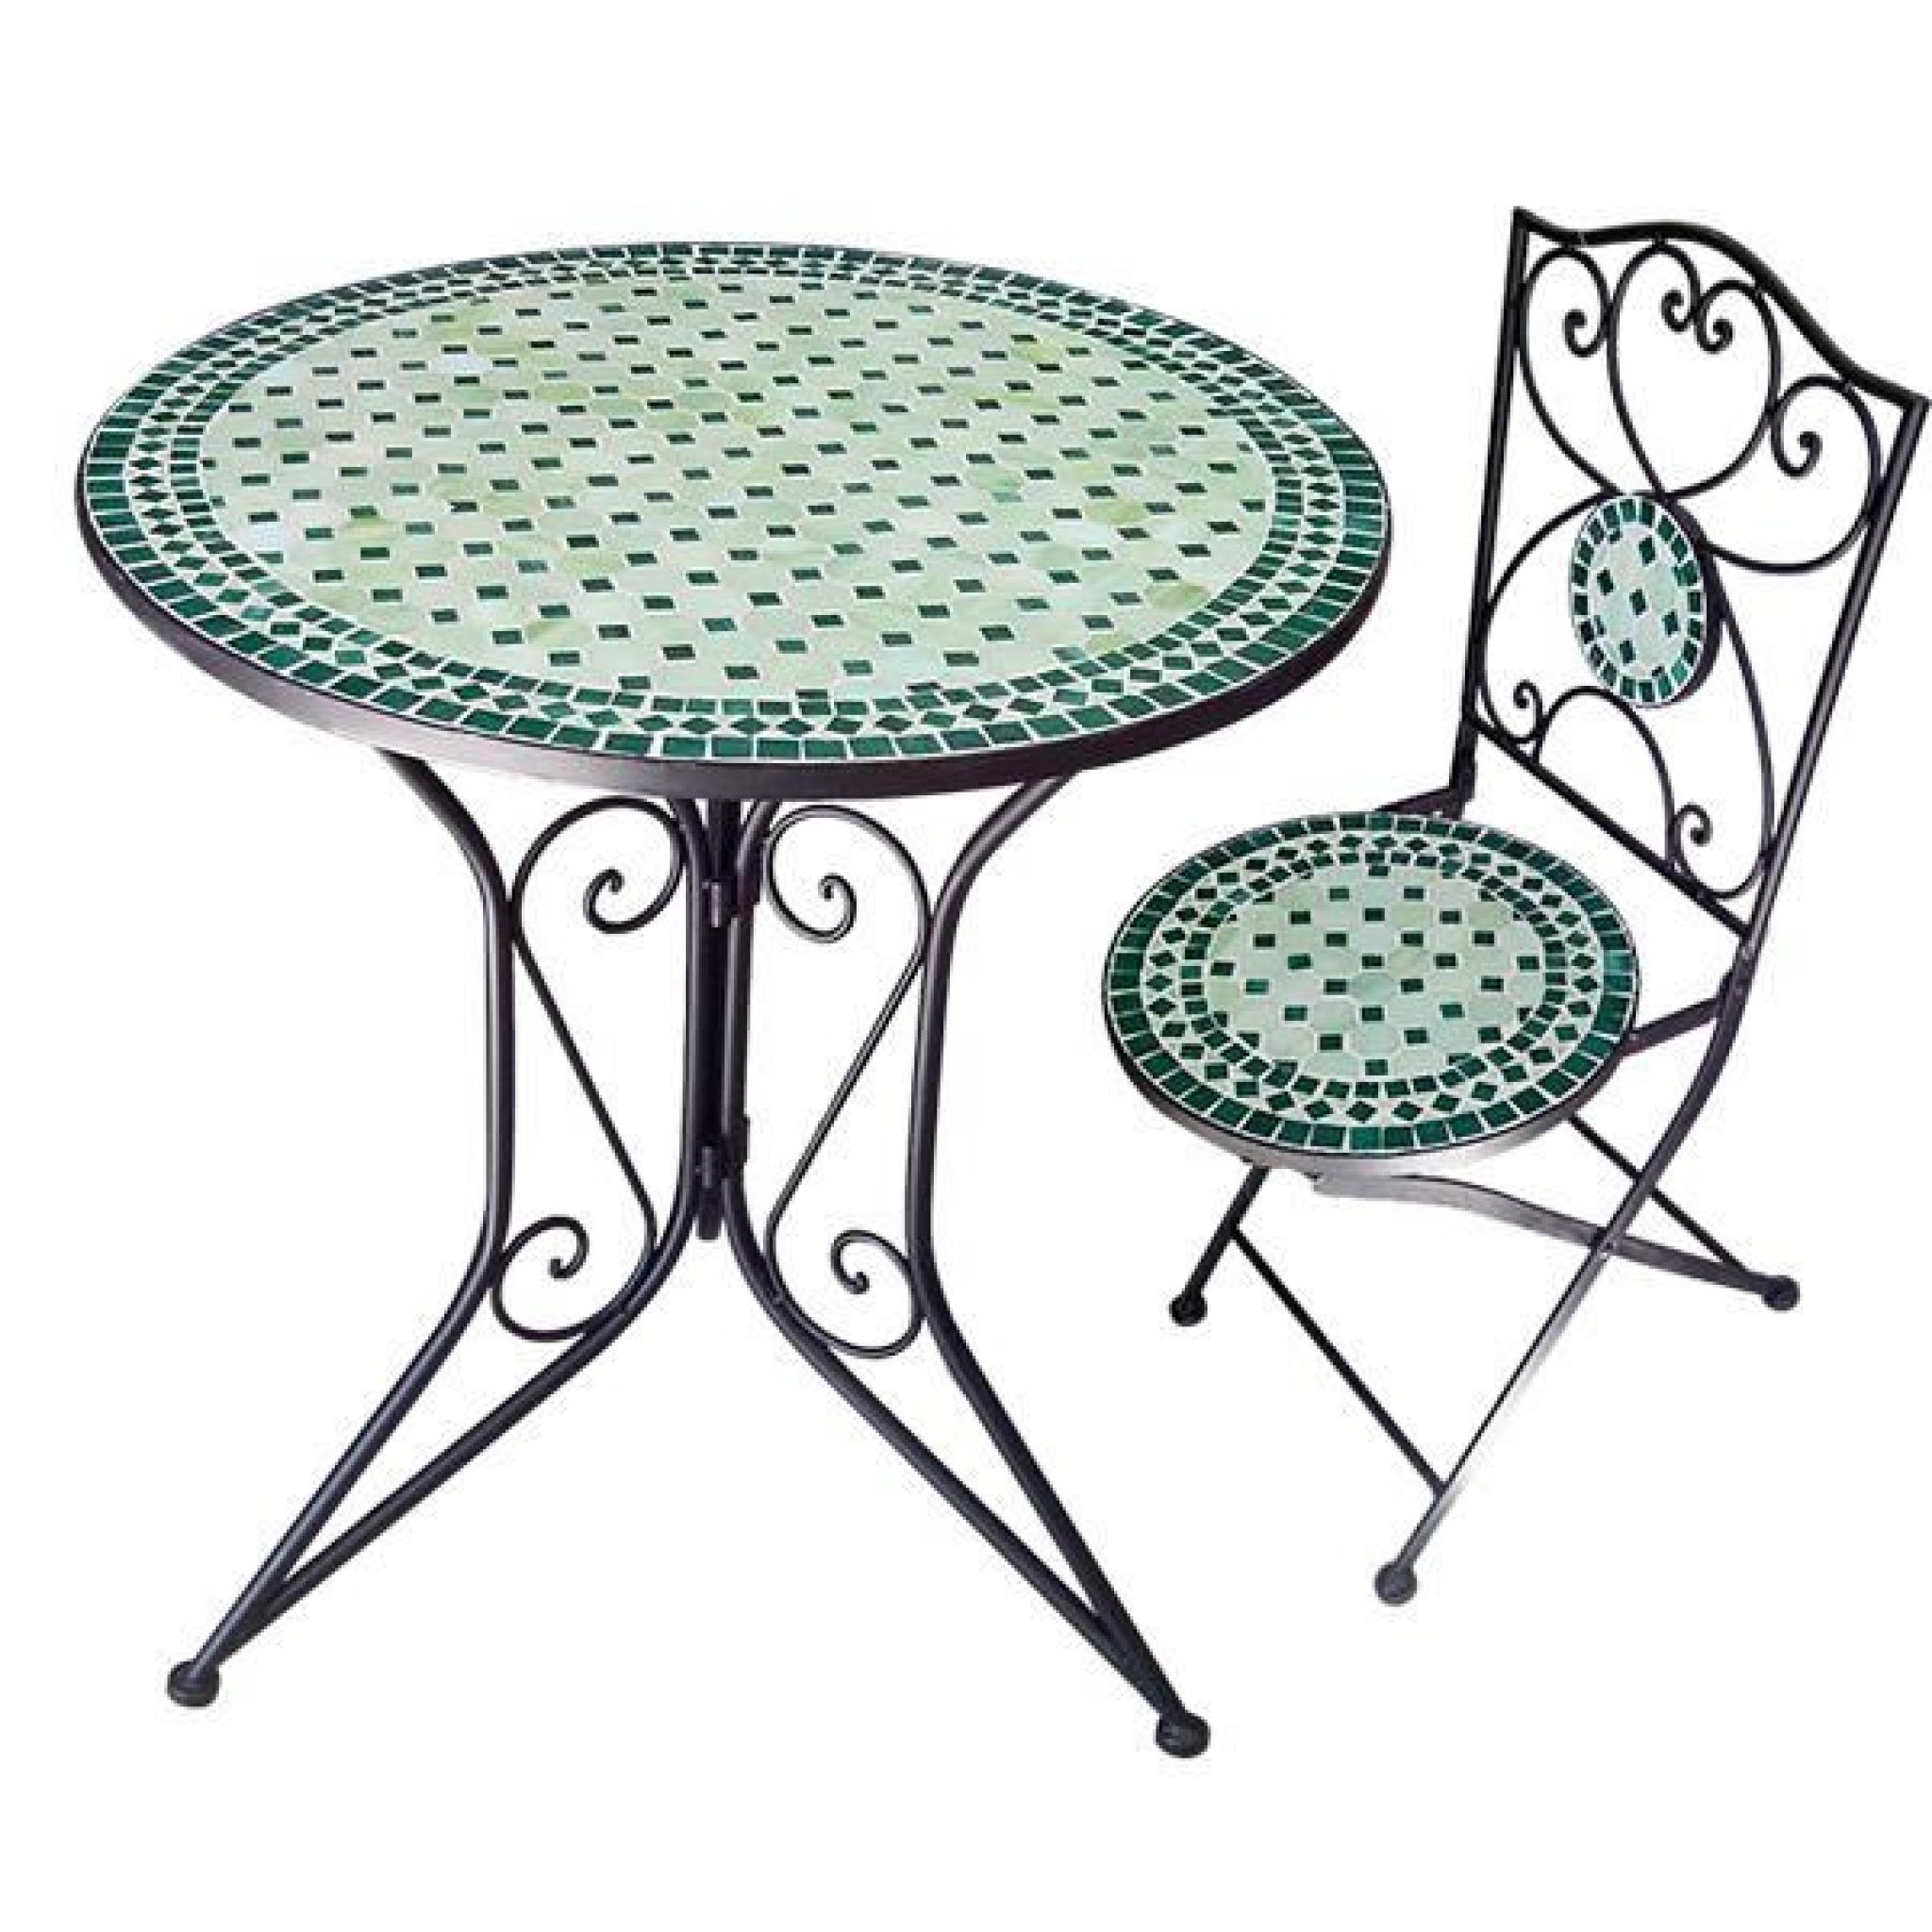 Nmp - Ensemble table + 5 chaises fer forgé et mosaïque verte - ensemble 1+5 vert